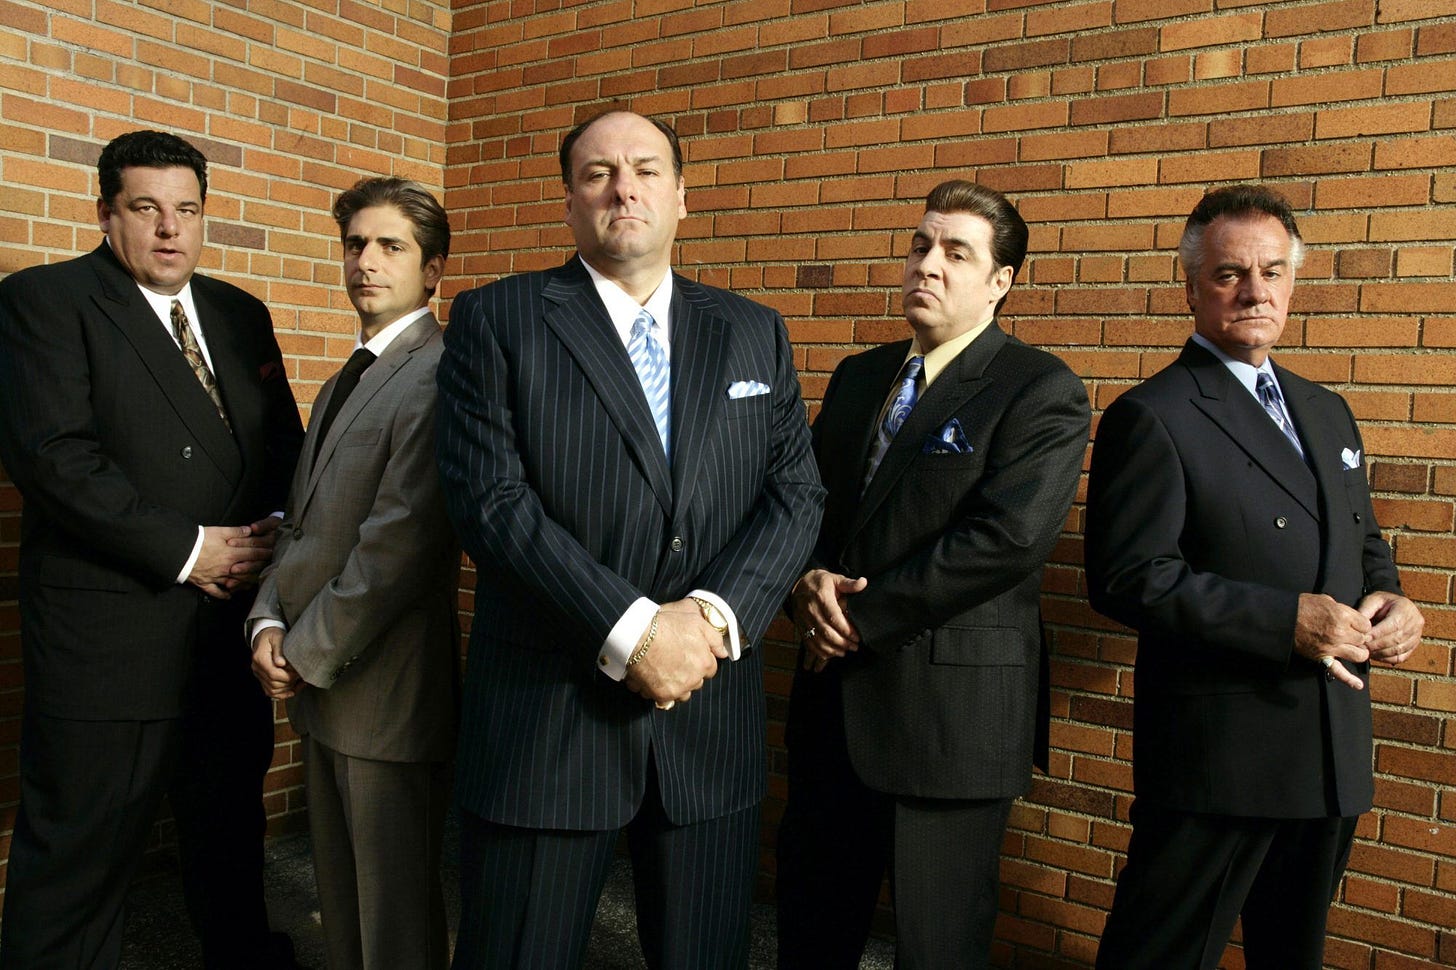 Talks underway for Sopranos prequel/sequel series